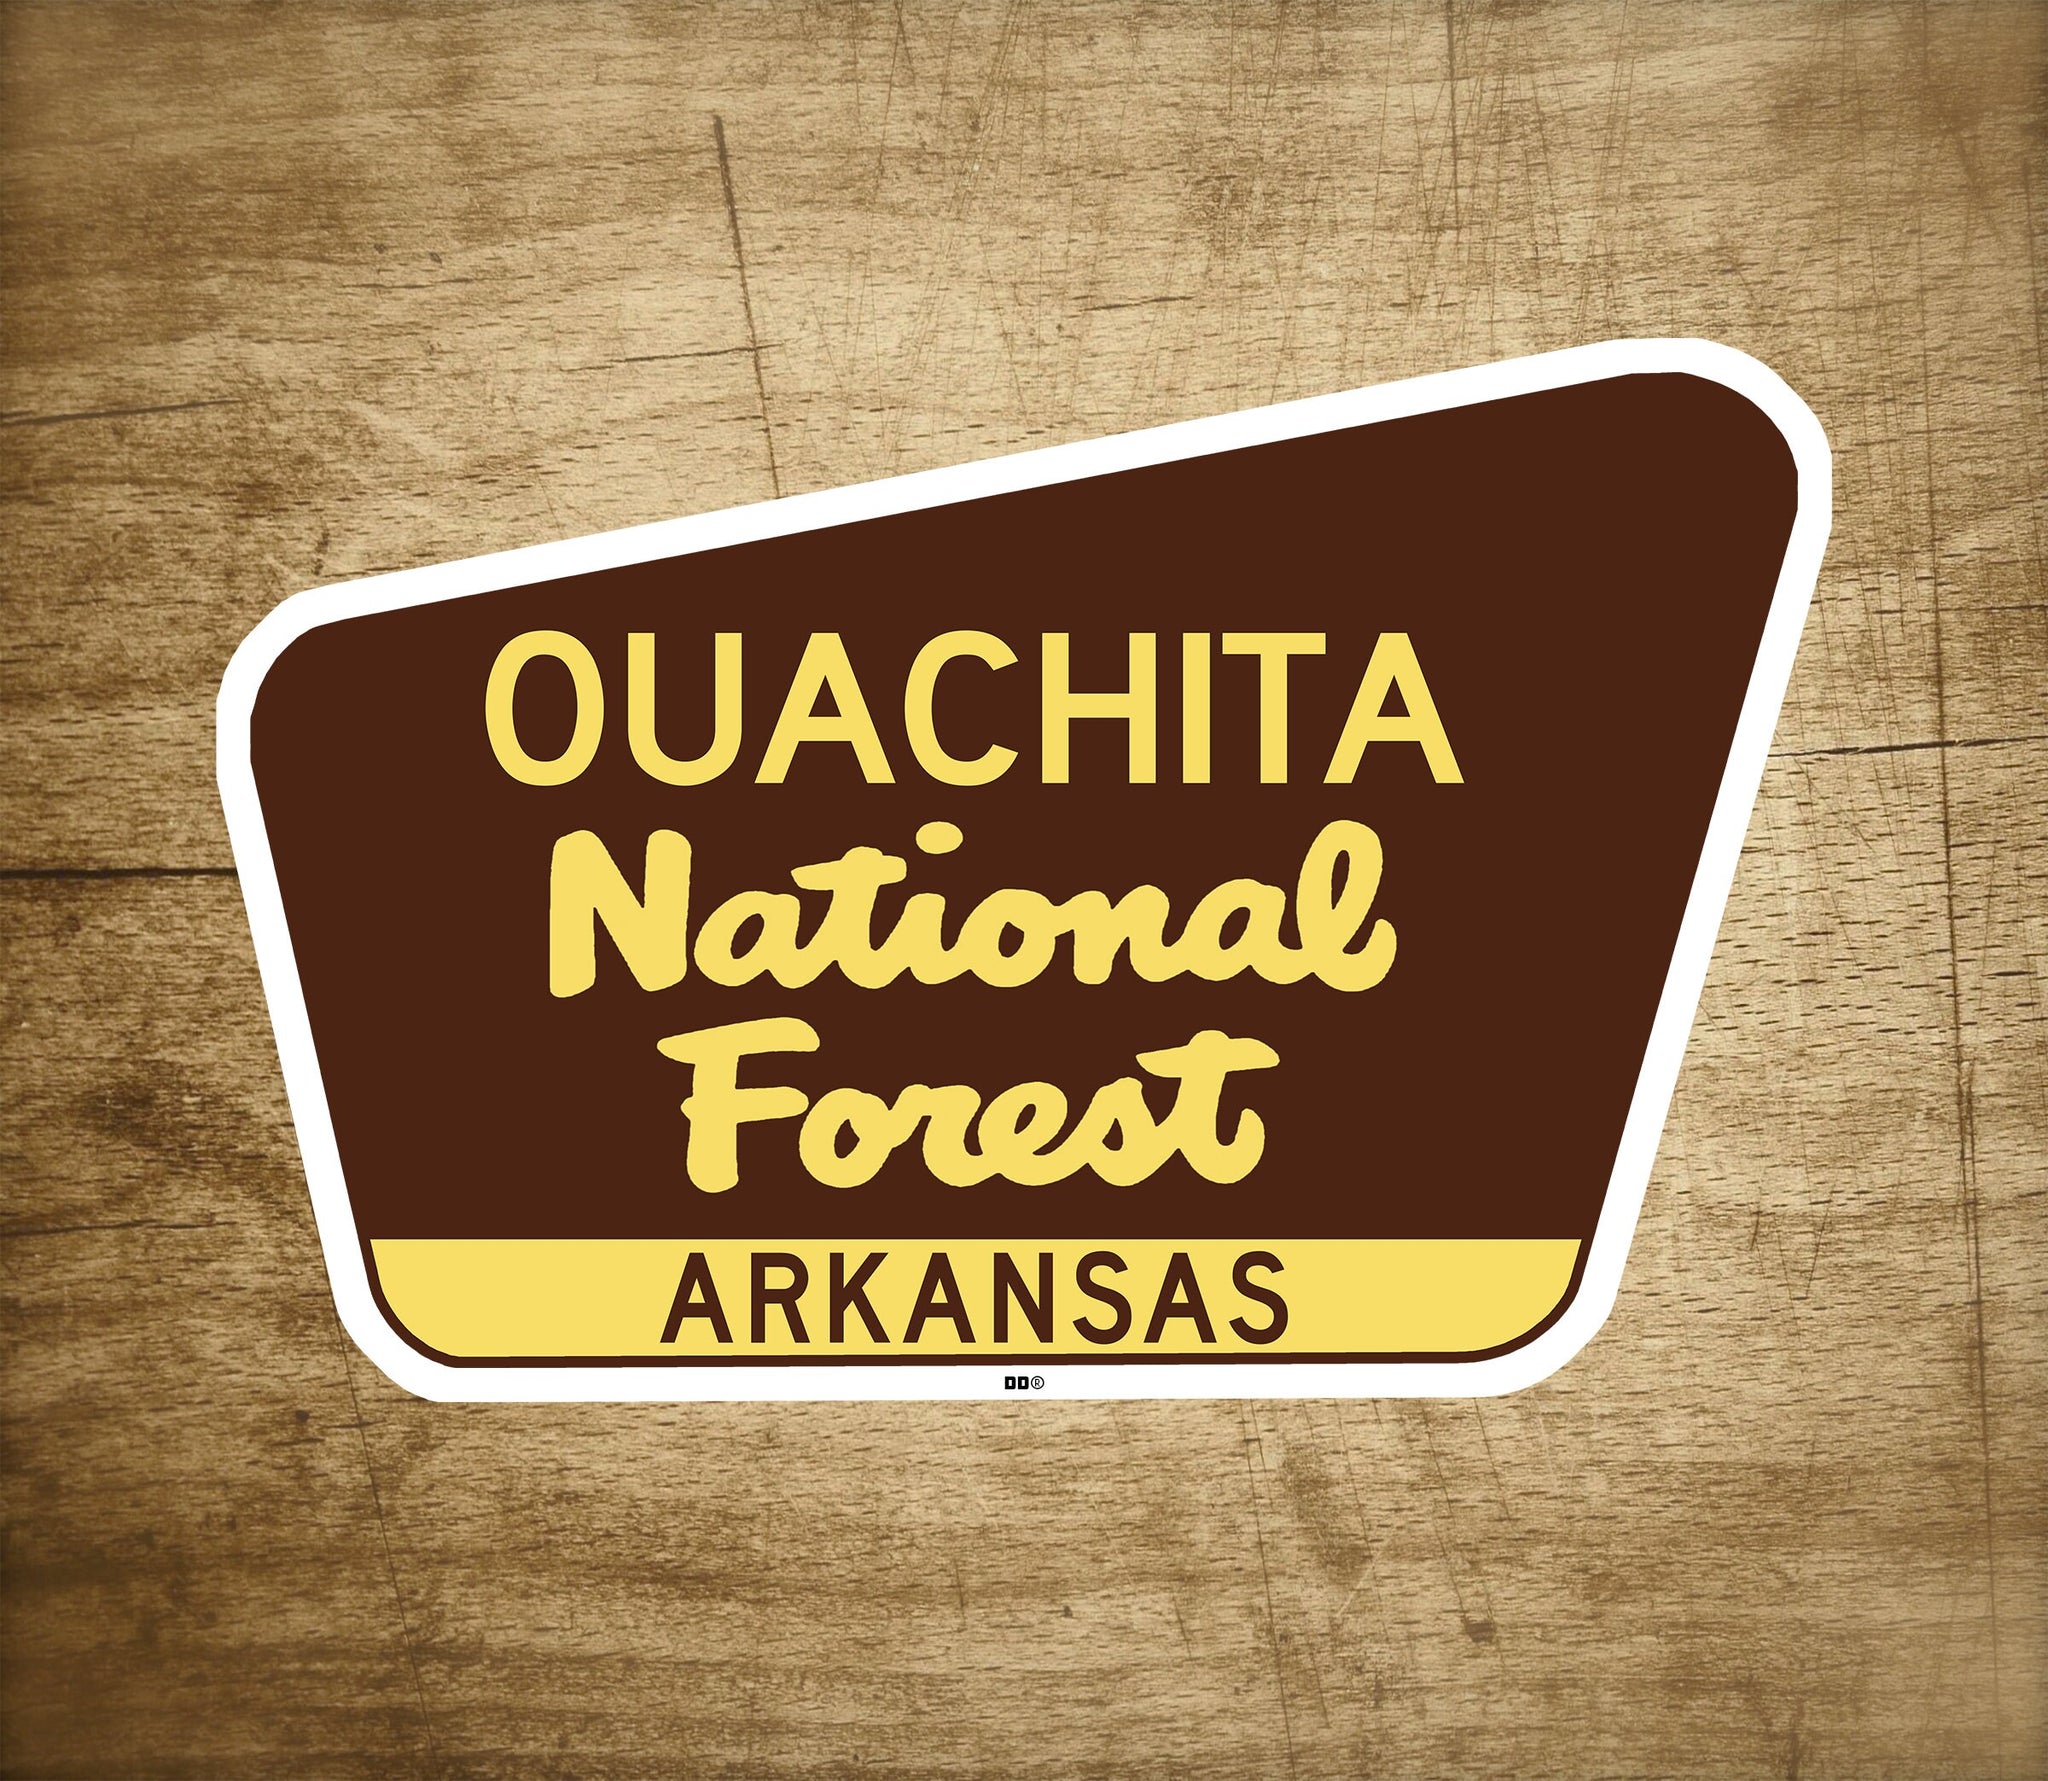 Ouachita National Forest Decal Sticker 3.75" x 2.5" Arkansas Park Vinyl